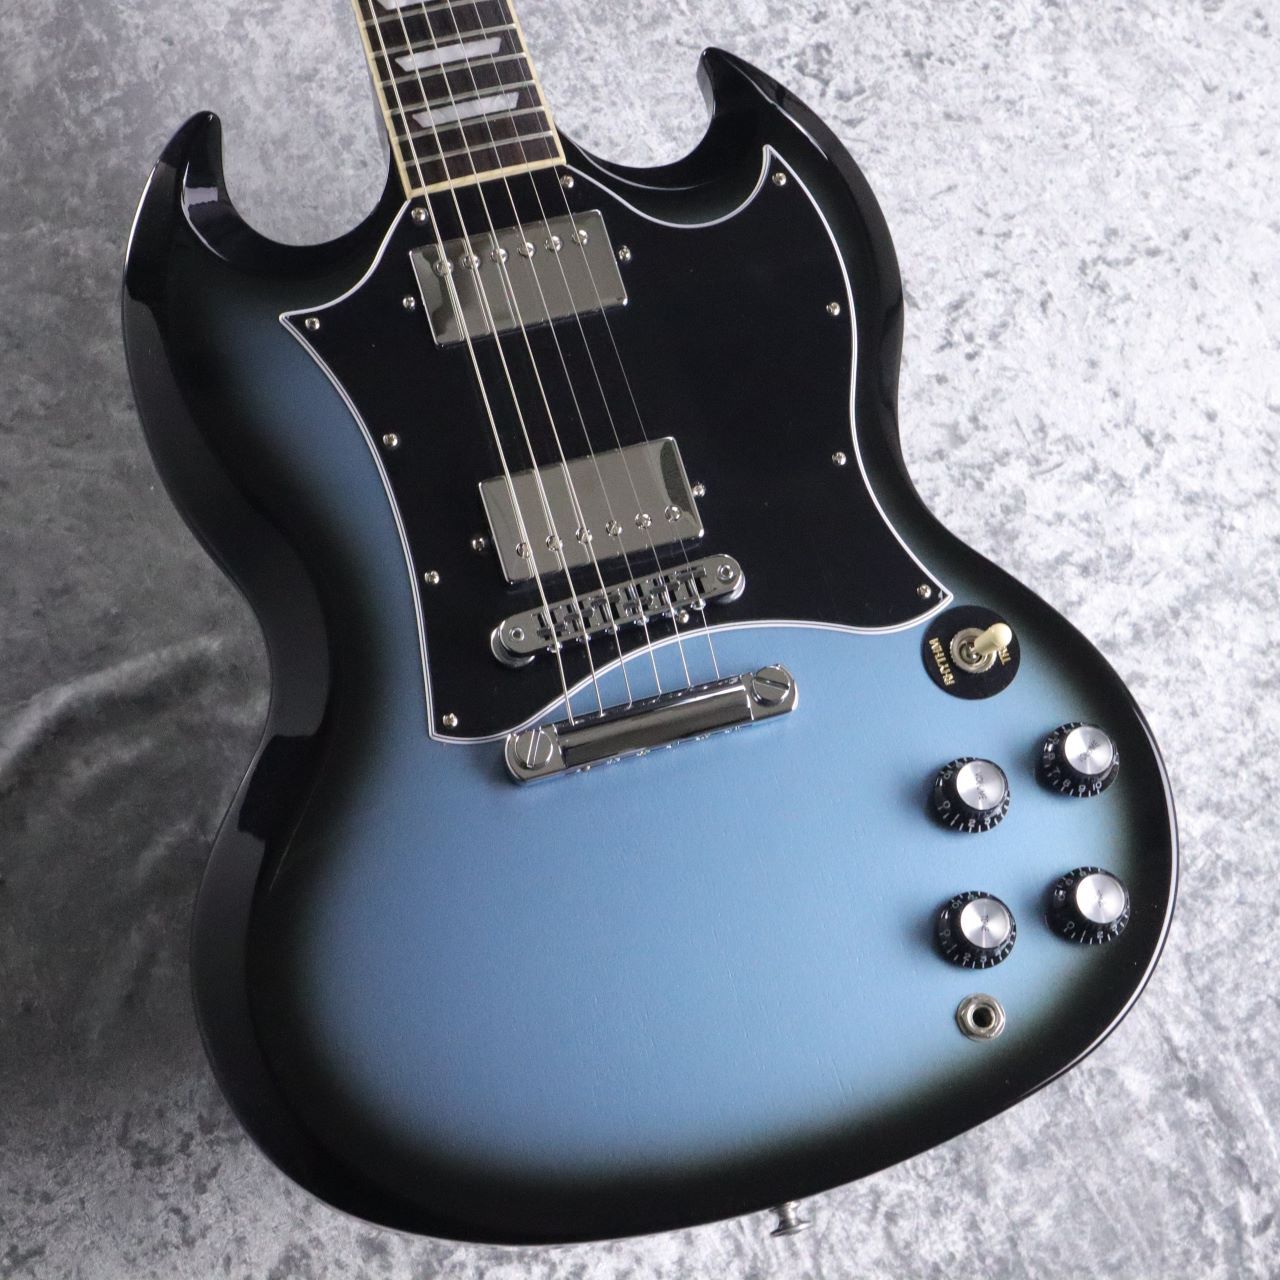 Gibson 【Custom Color Series】 SG Standard Pelham Blue Burst s/n 